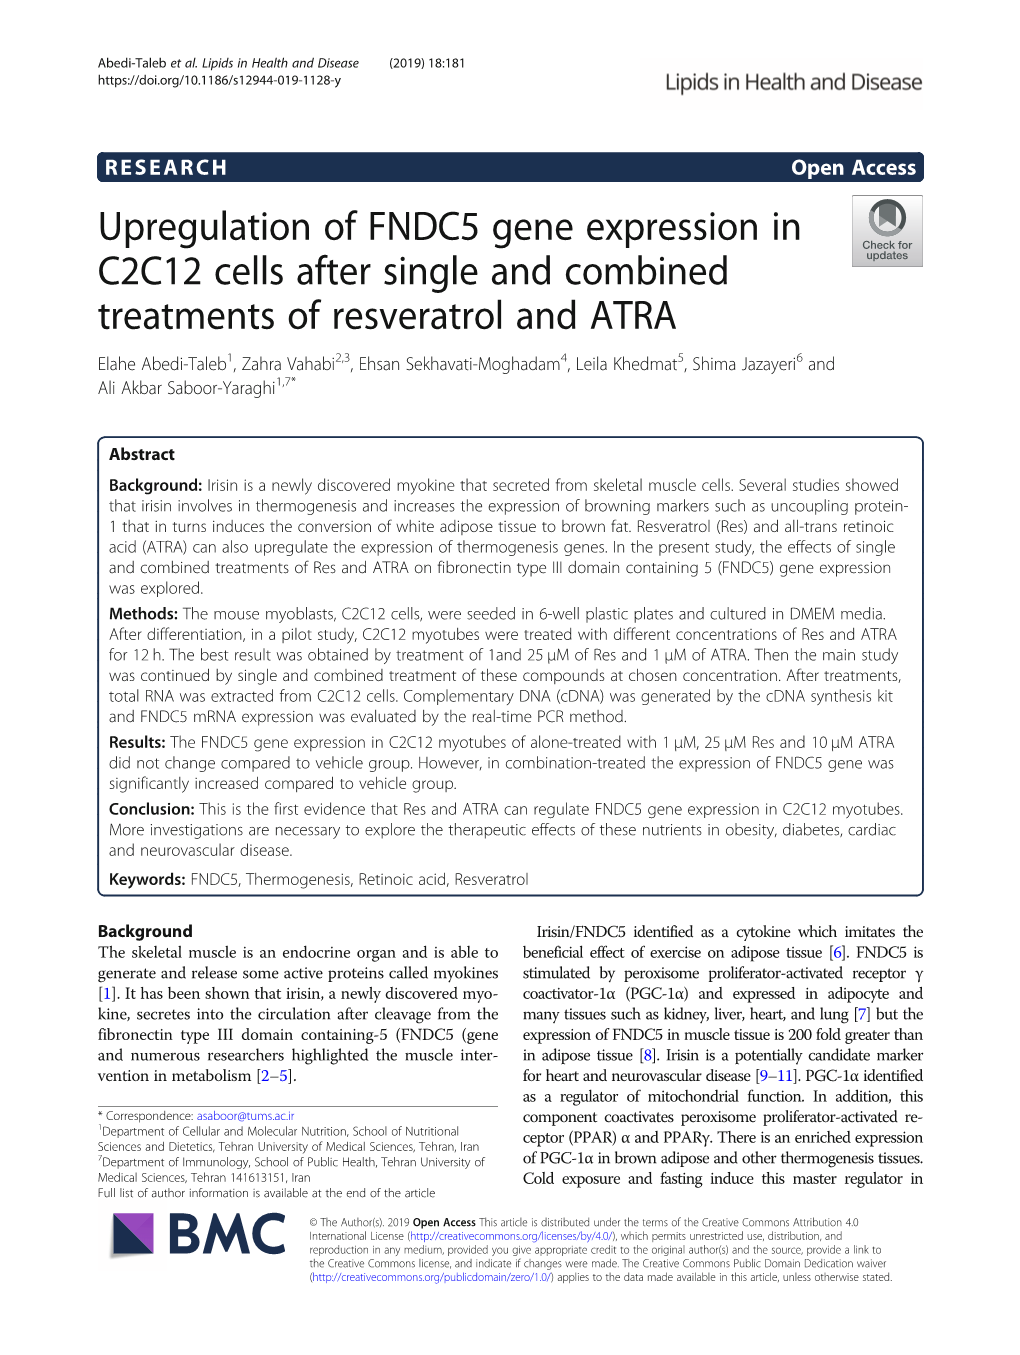 Upregulation of FNDC5 Gene Expression in C2C12 Cells After